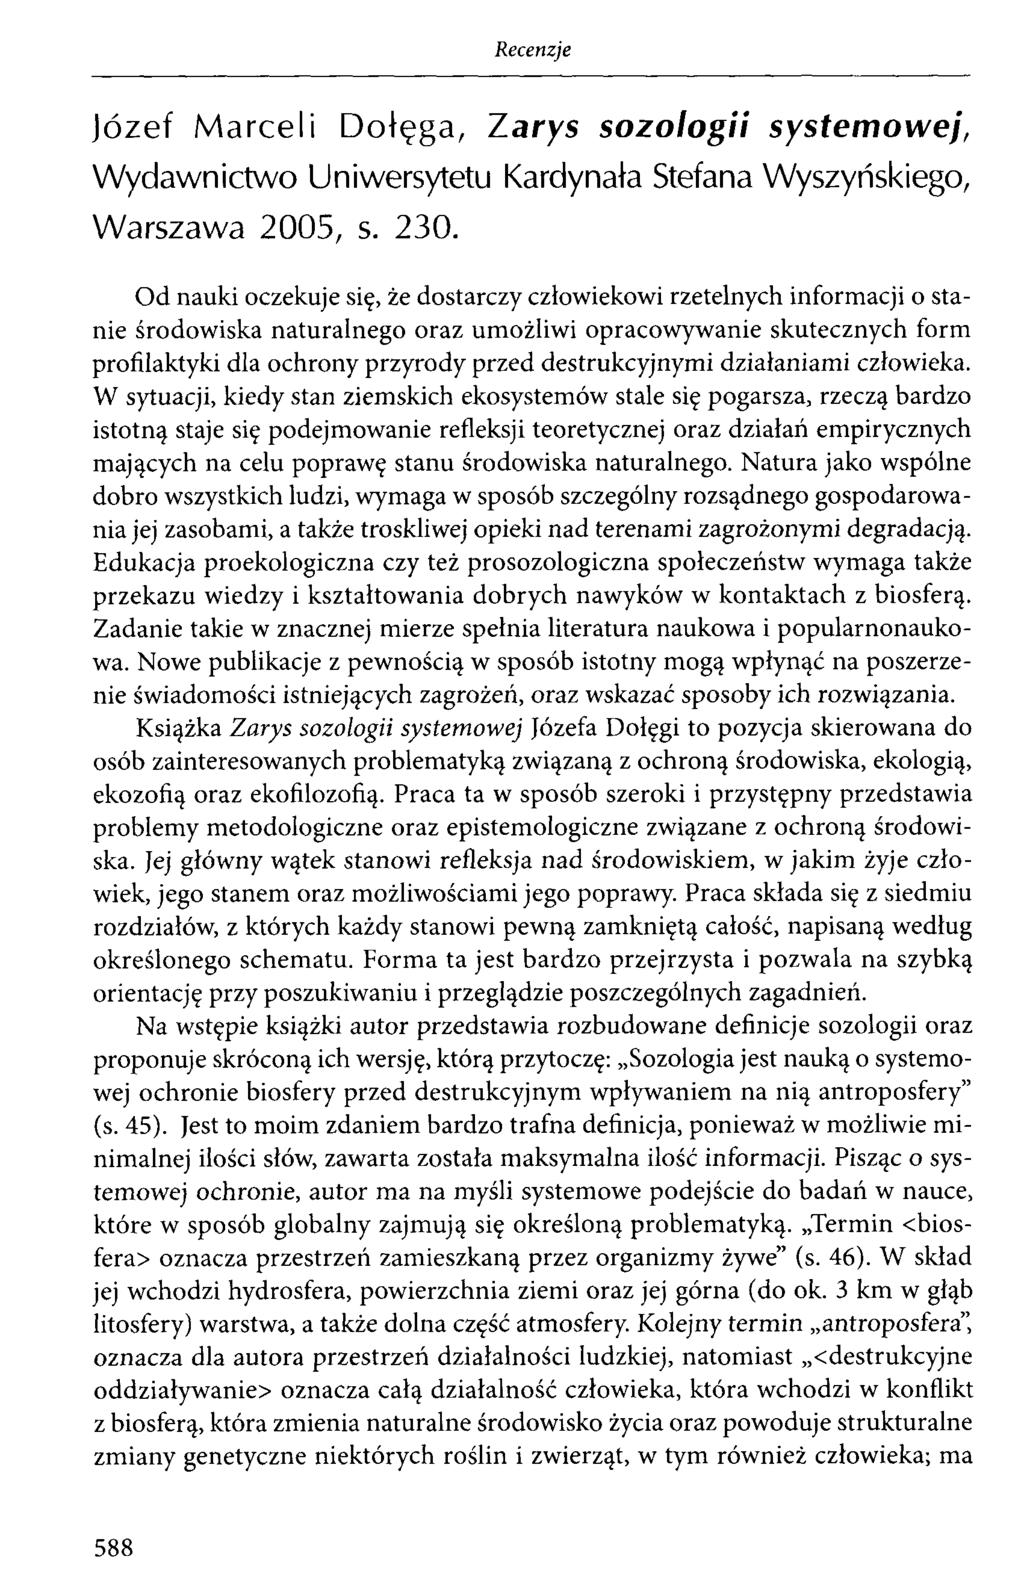 Józef Marceli Dołęga, Zarys sozologii systemowej, Wydawnictwo Uniwersytetu Kardynała Stefana Wyszyńskiego, Warszawa 2005, s. 230.